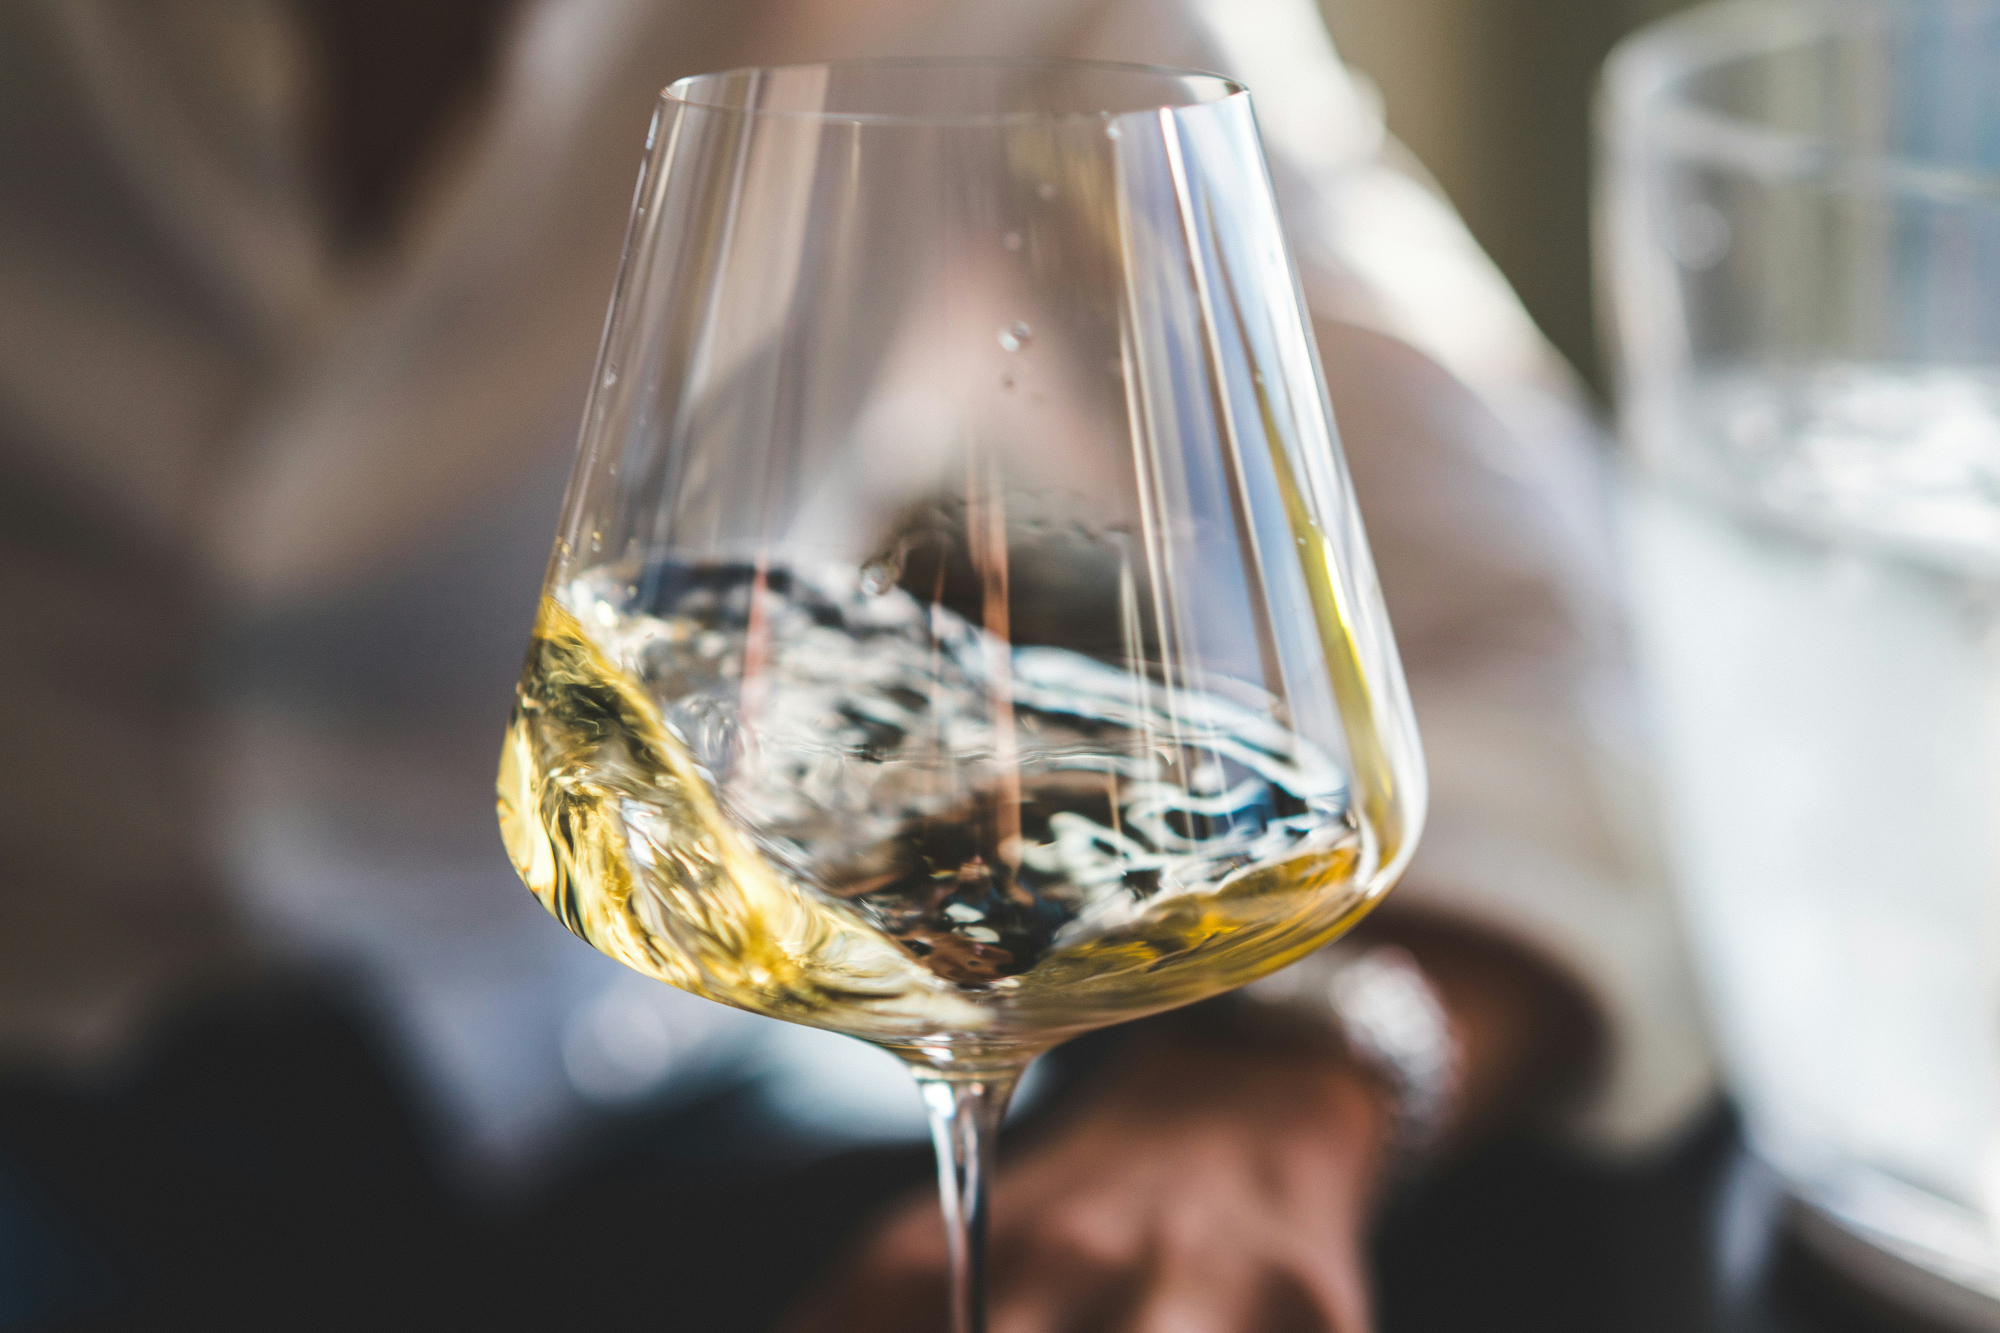 découvrez une sélection de vins de qualité provenant des meilleurs vignobles, disponibles en ligne. trouvez le vin parfait pour accompagner vos repas et célébrations.